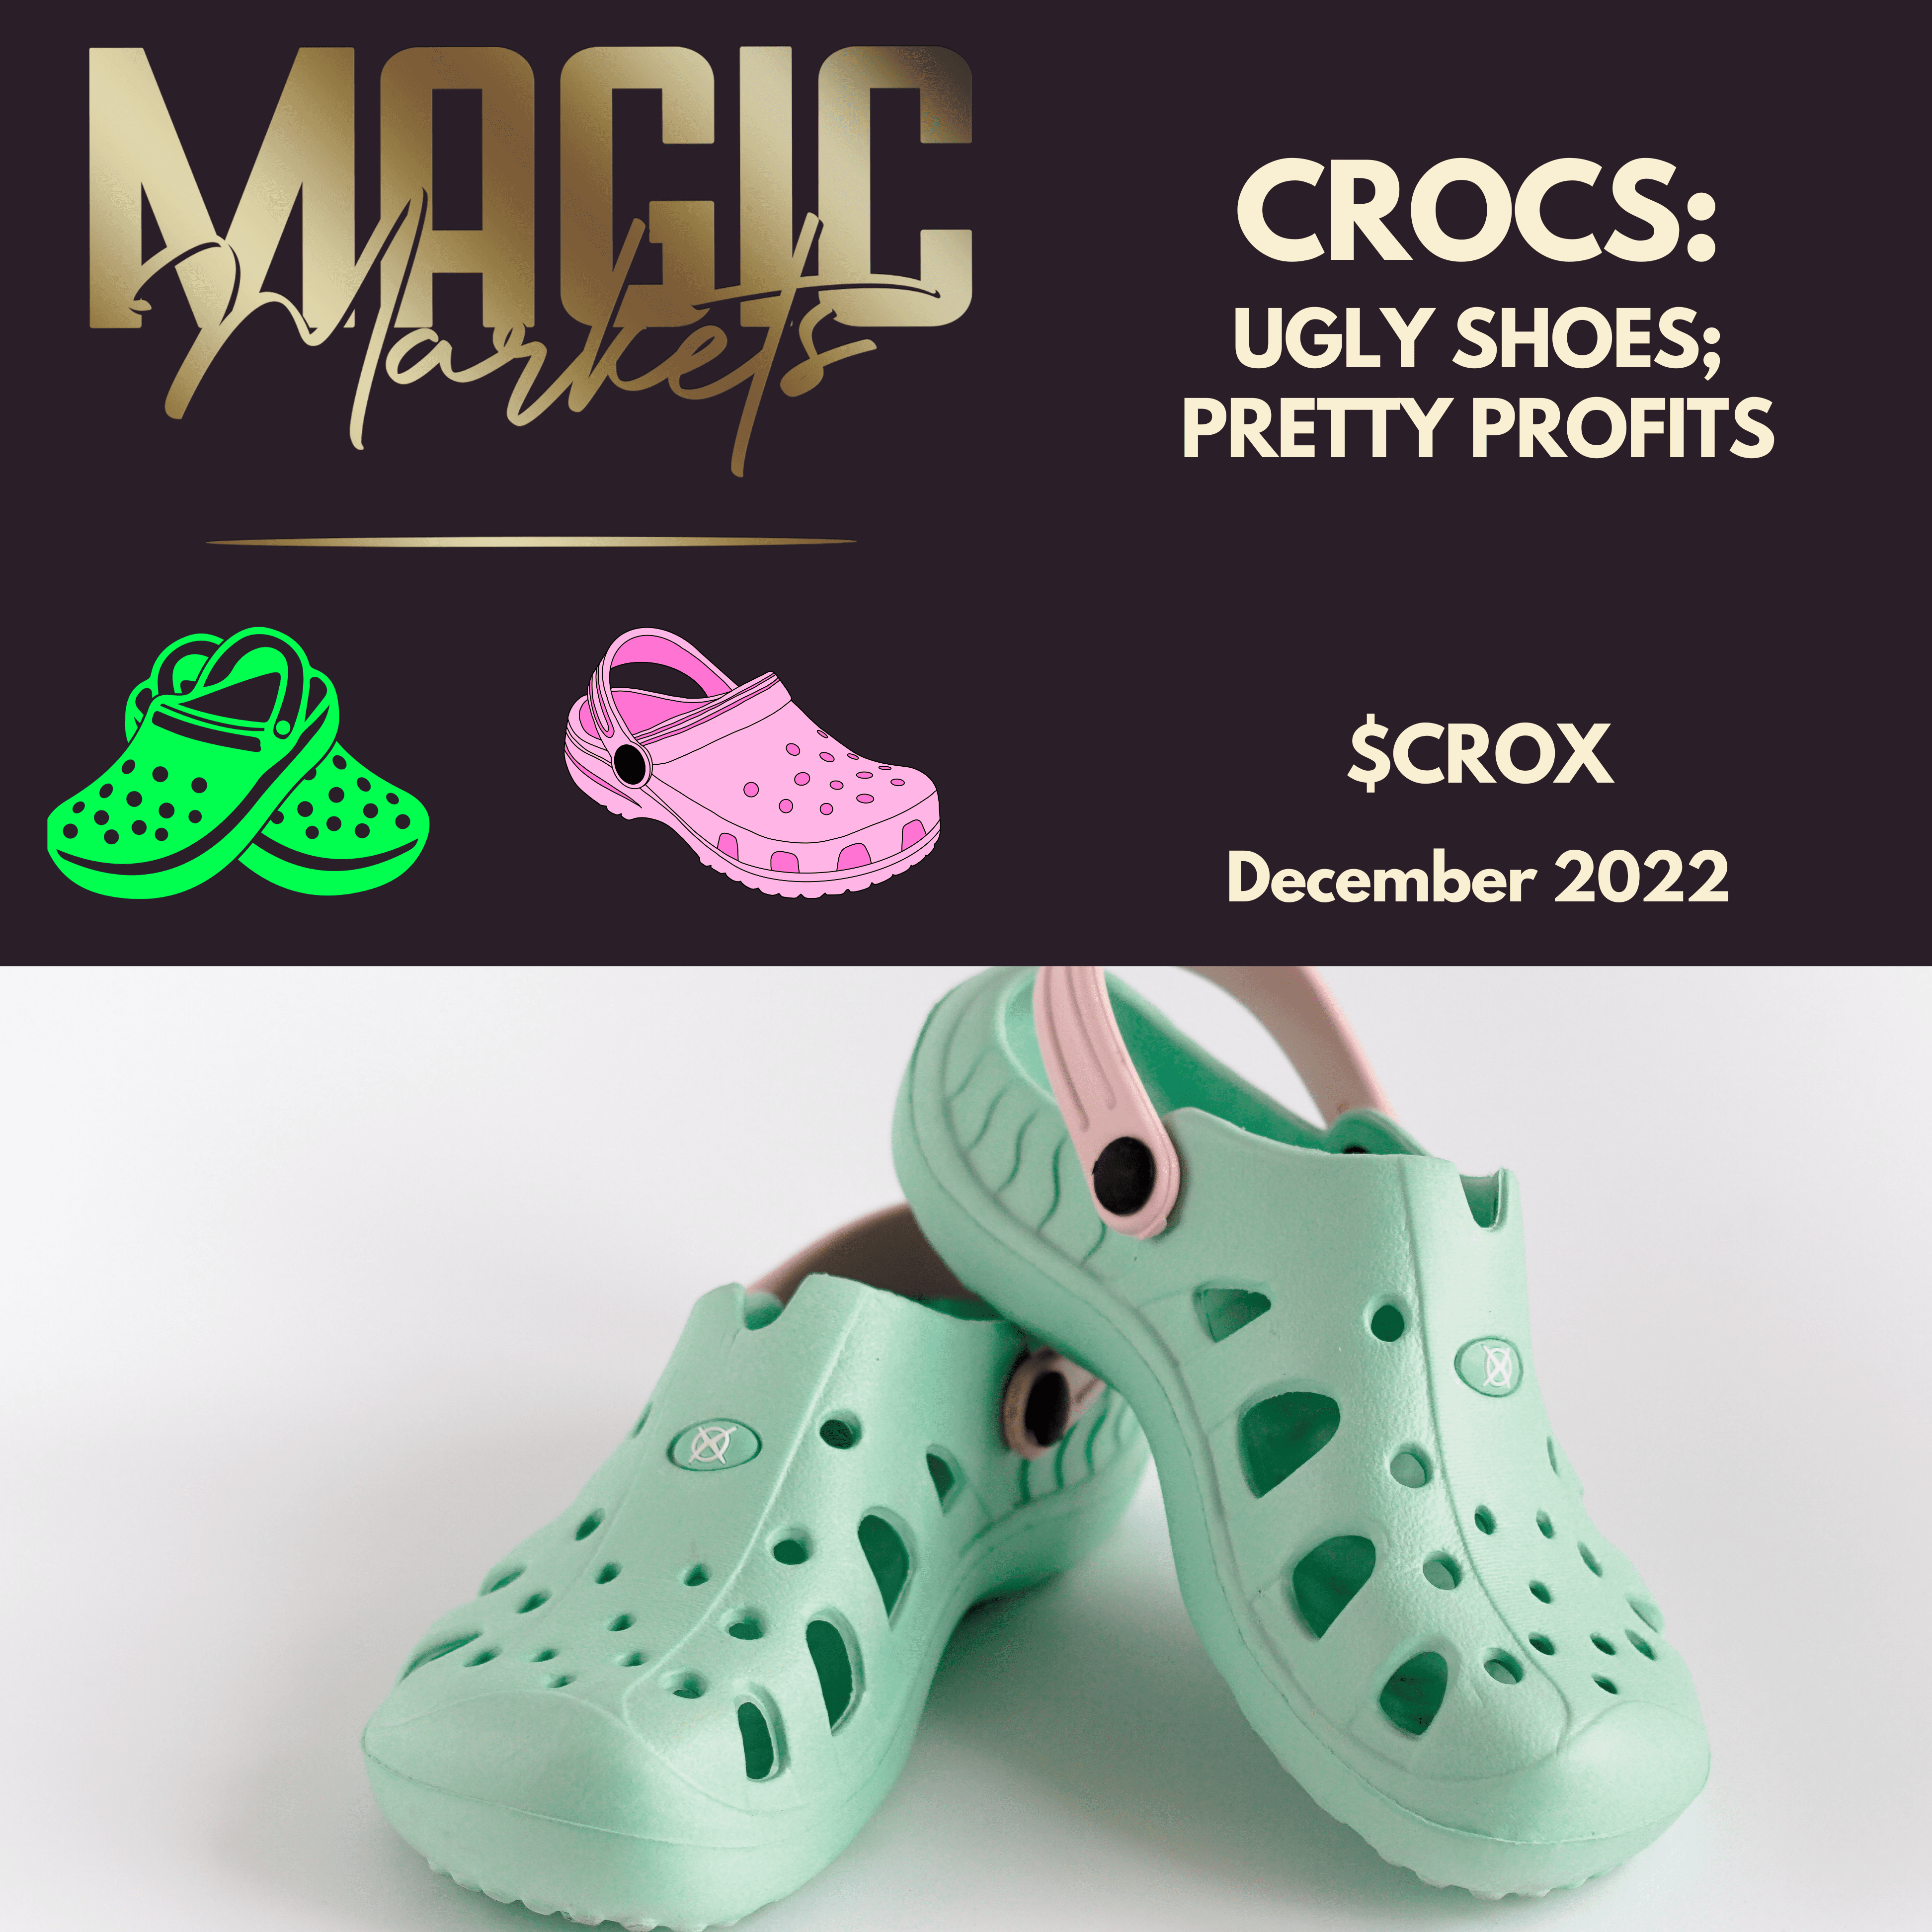 Magic Markets Premium: Crocs